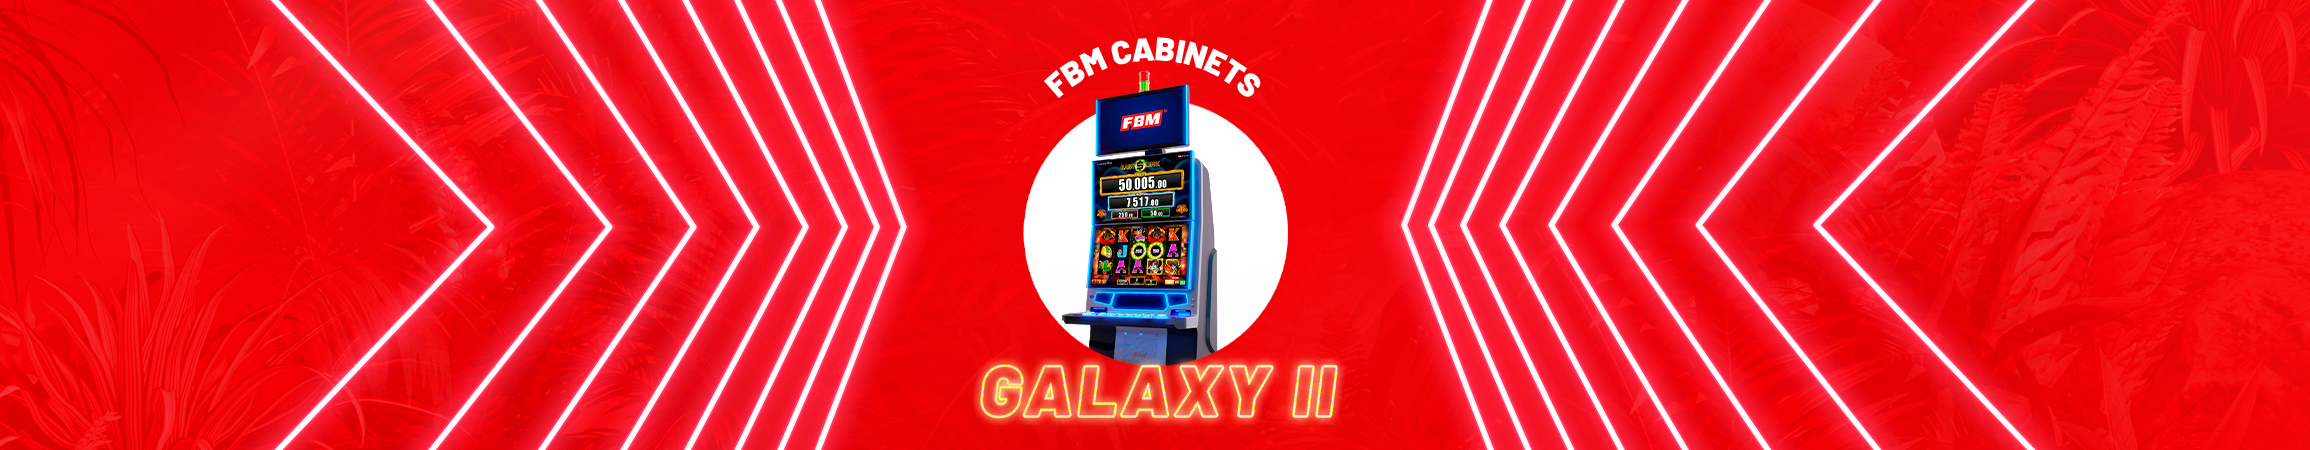 Galaxy II: cómo aportar beneficios a tu negocio con los mejores gabinetes de casino